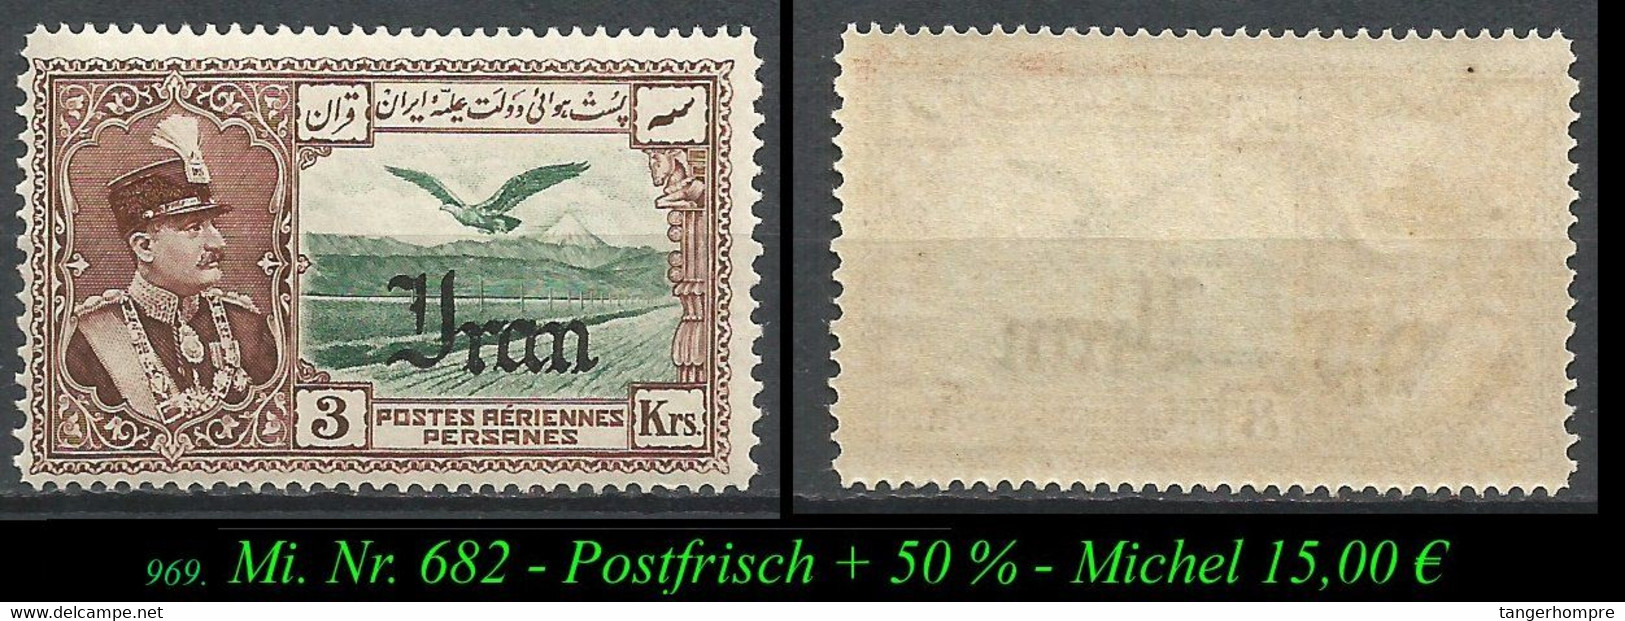 1935 - Mi. Nr. 682 - Postfrisch - Iran